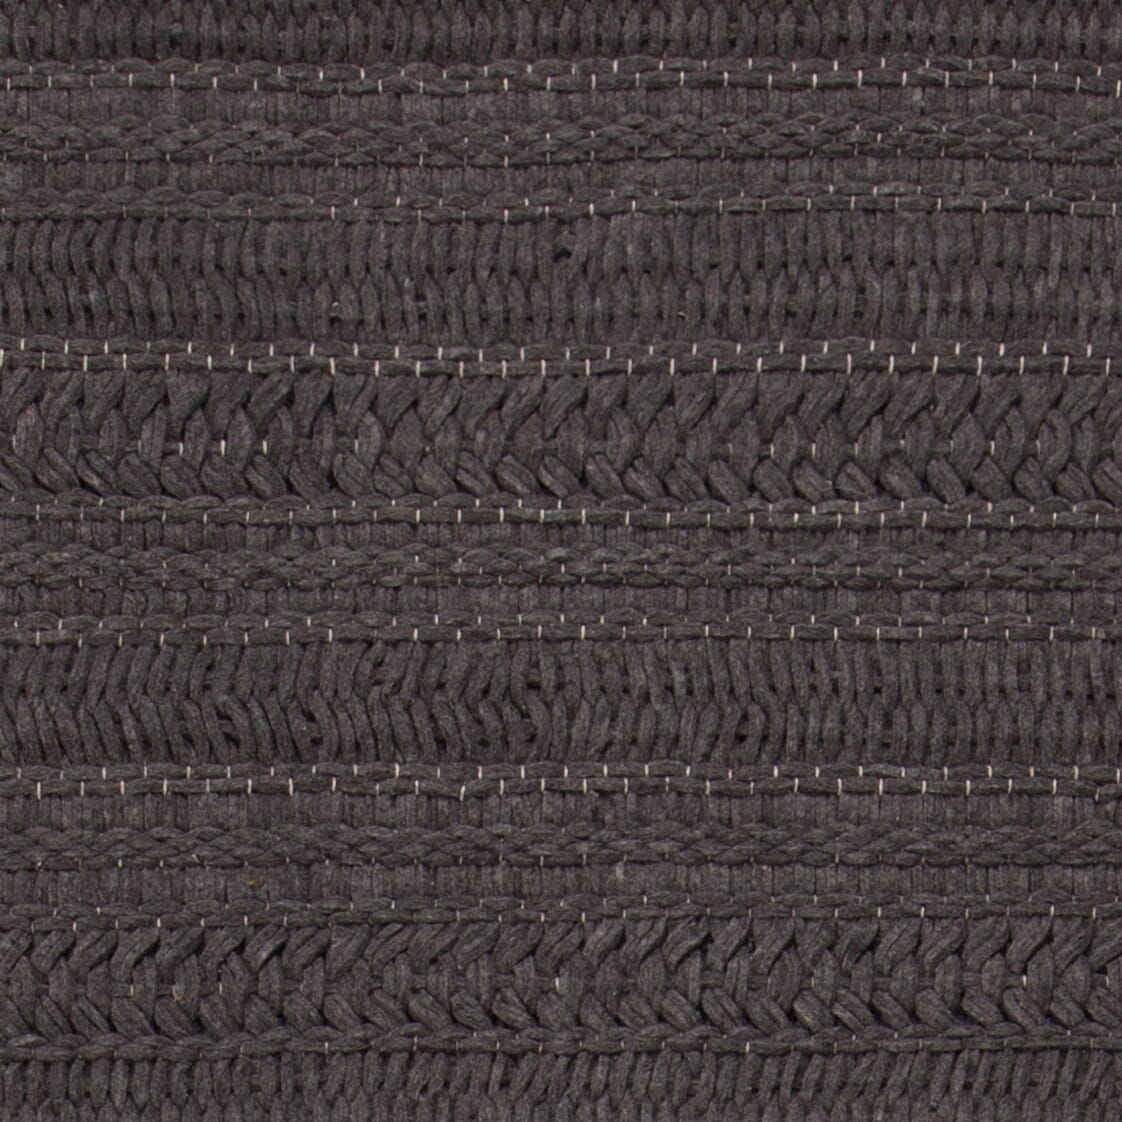 Chandra Tia Tia-48100 Charcoal Striped Area Rug